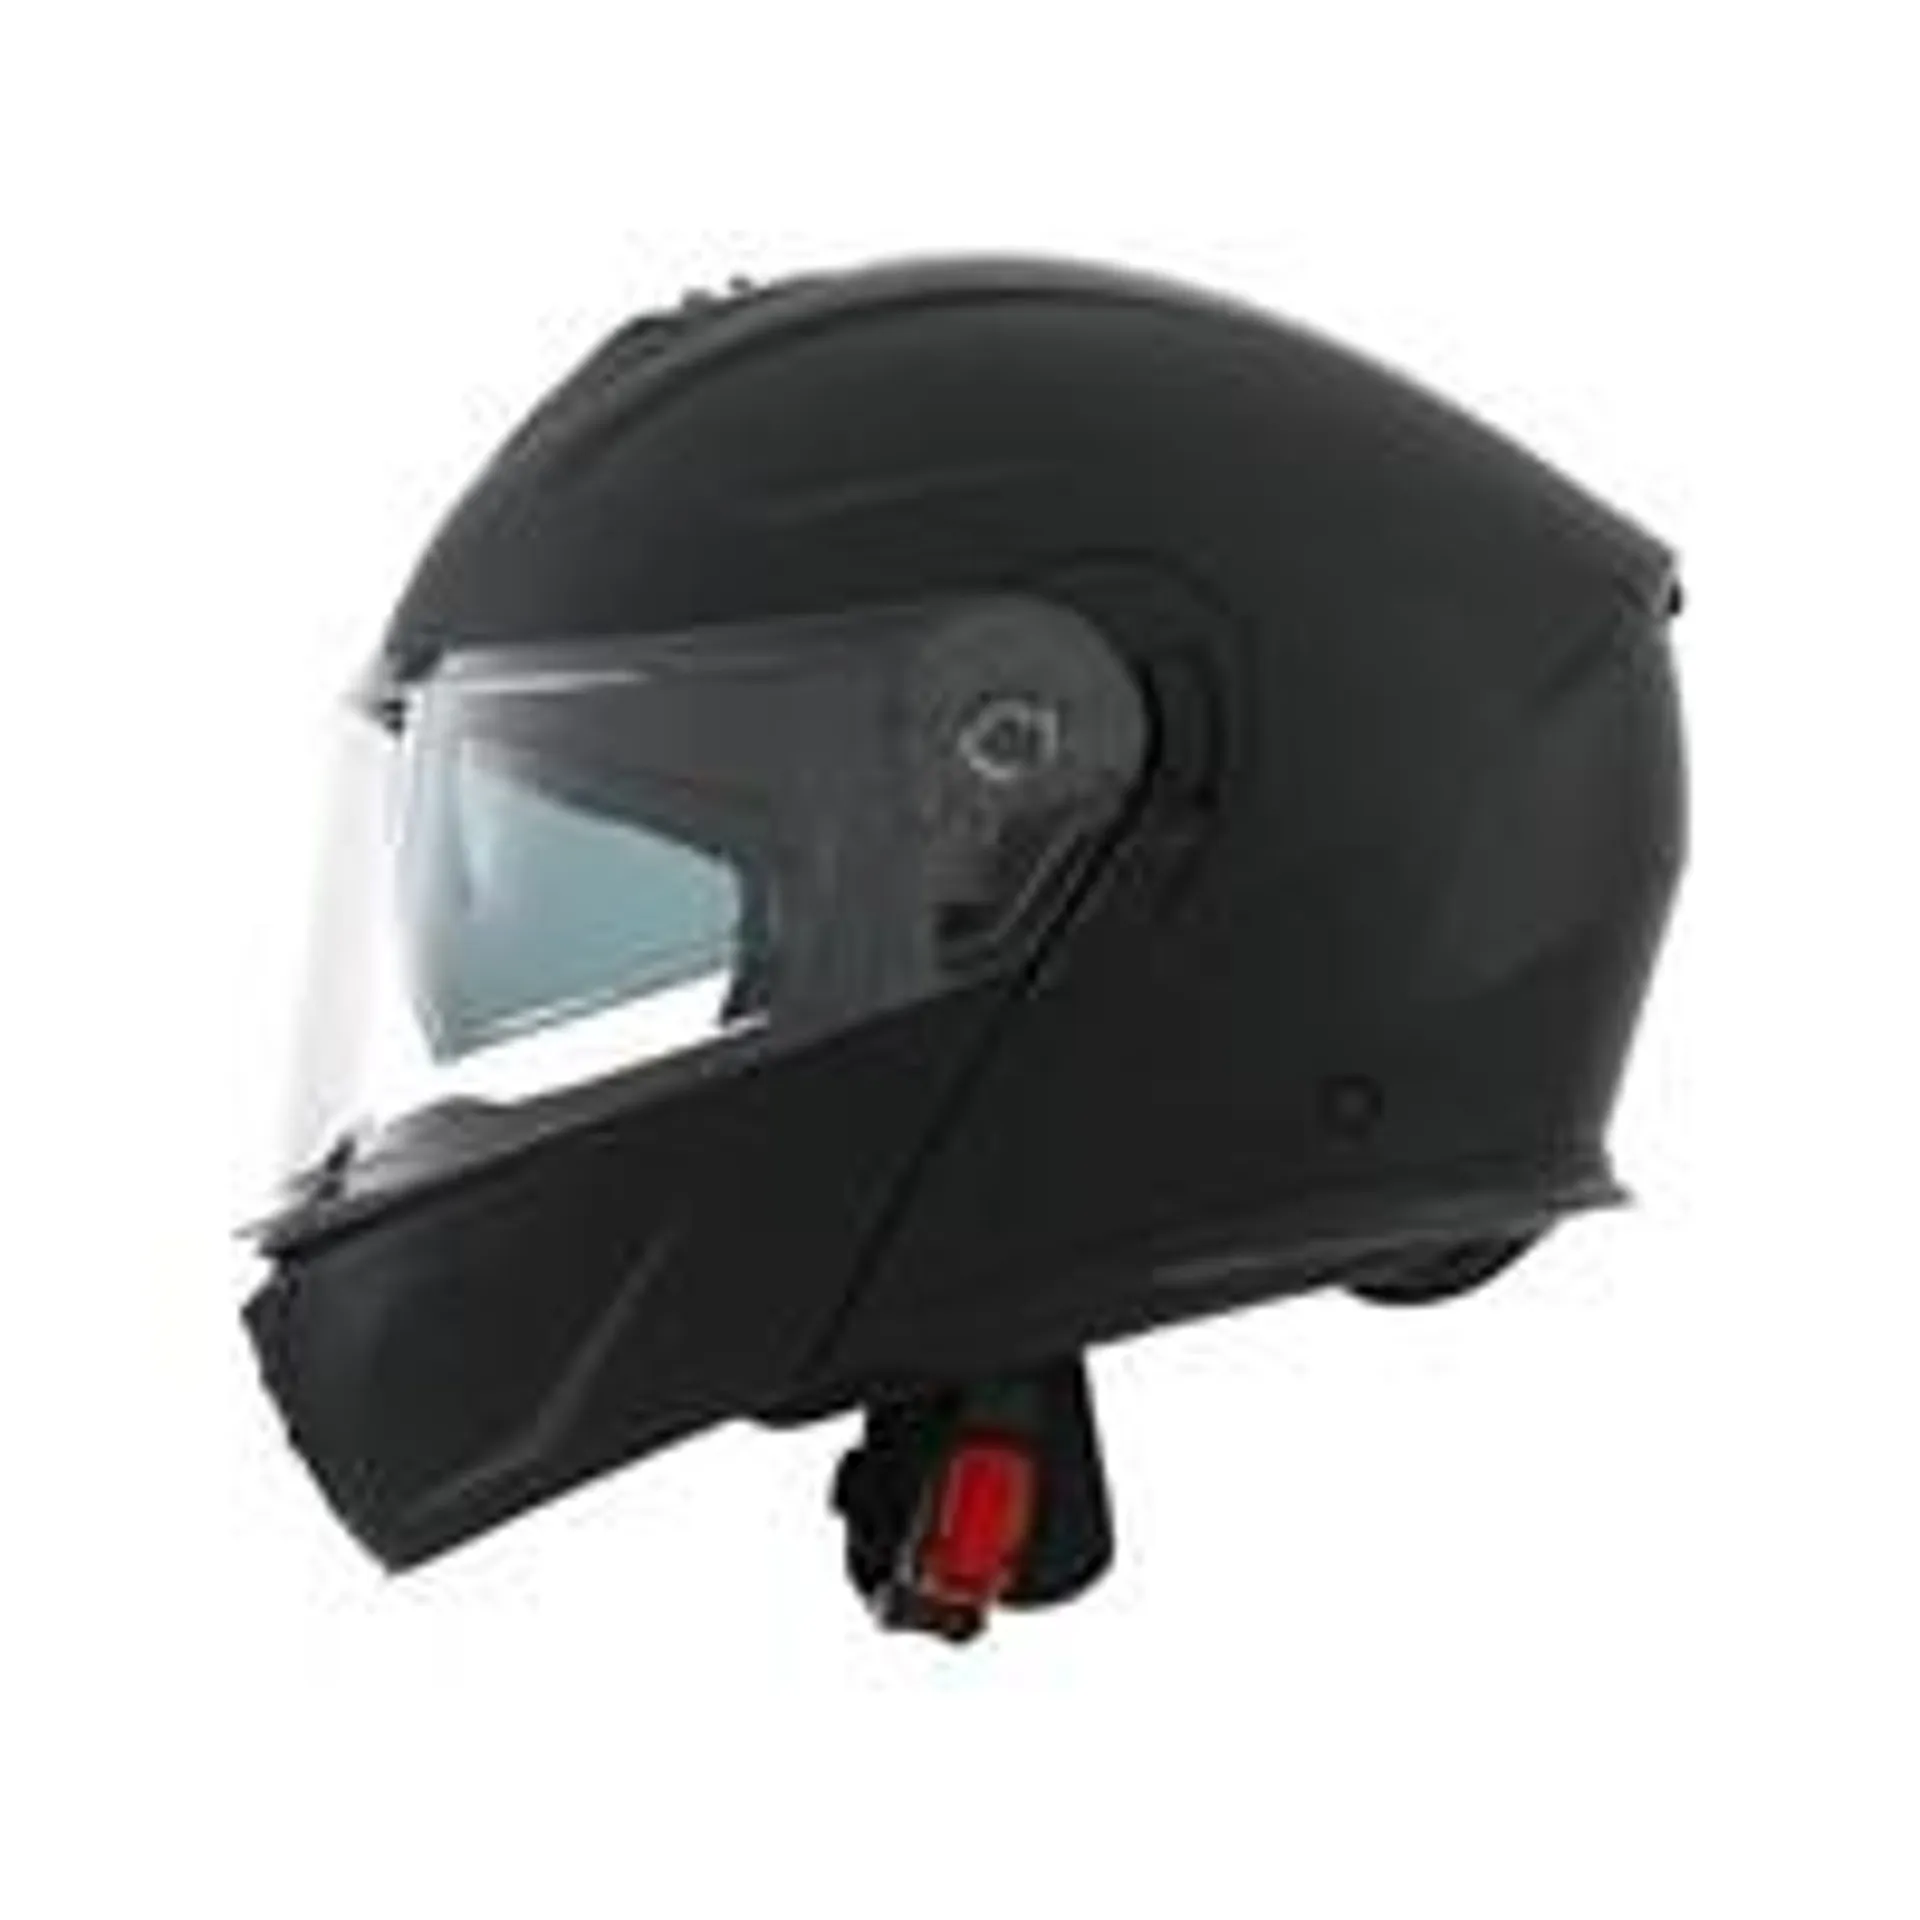 Wayscral Evolve Vision modularer Helm, Größe L, schwarz